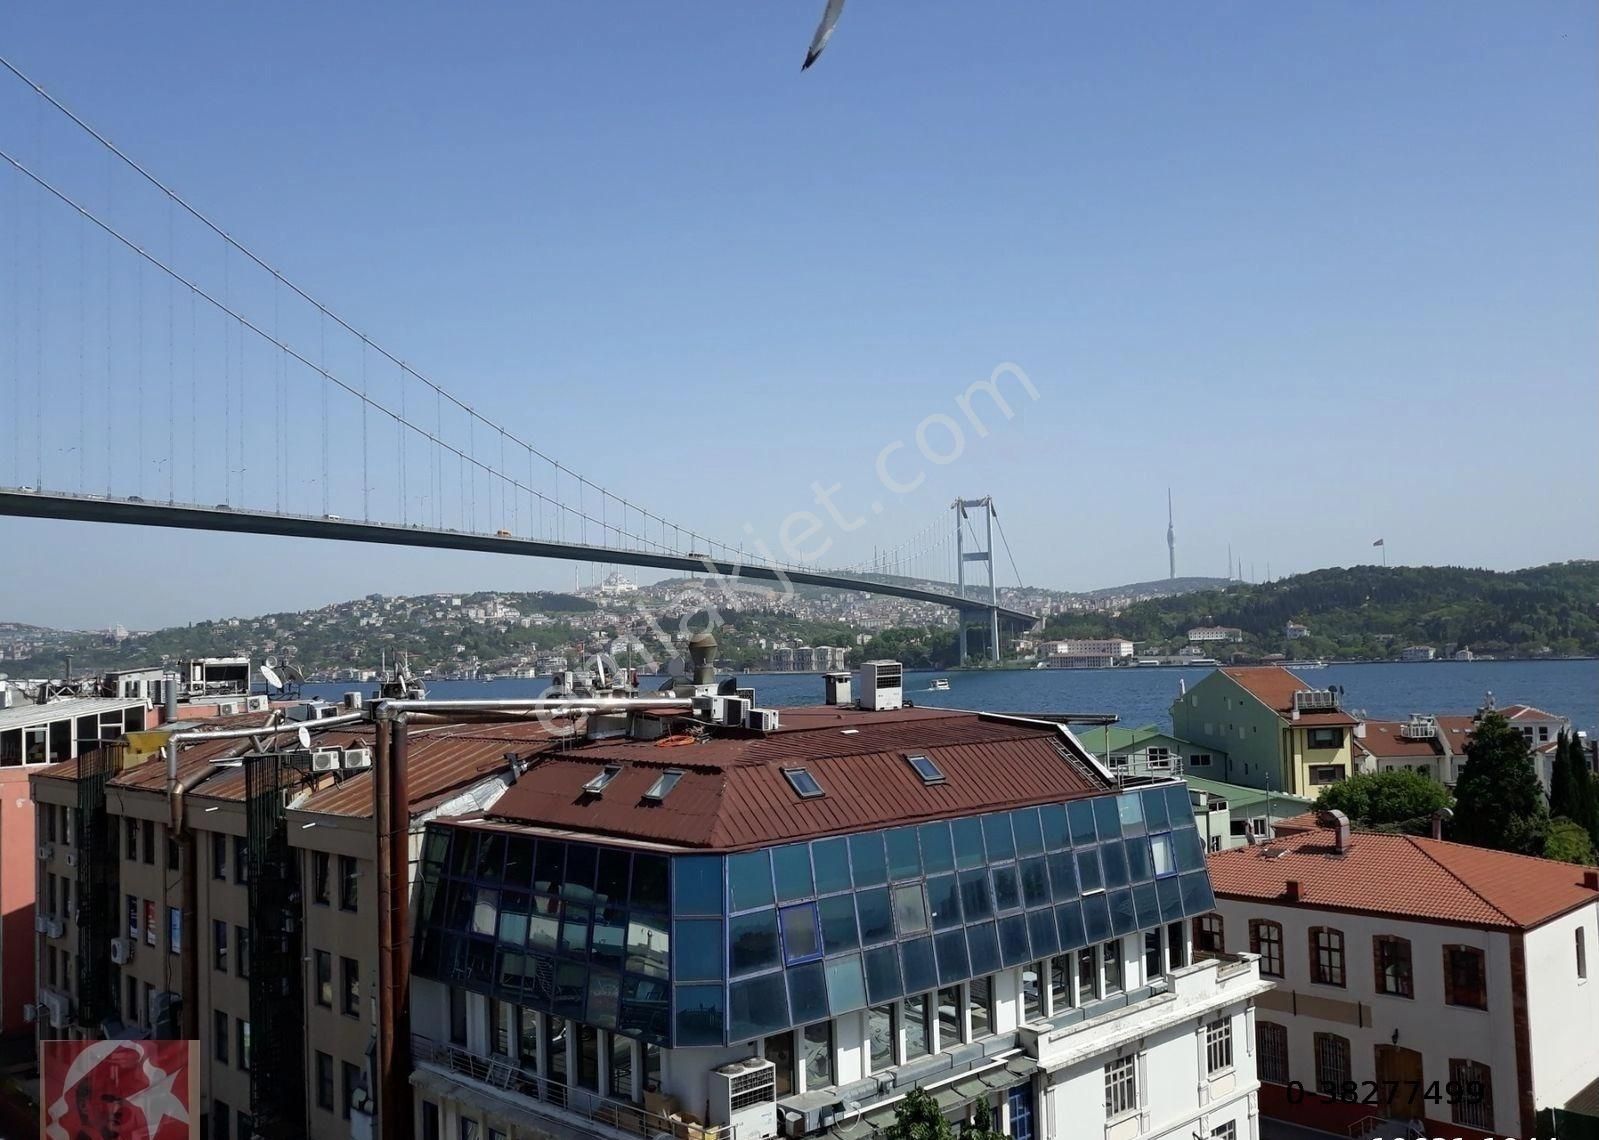 Beşiktaş Yıldız Satılık Bina KARADENİZ EMLAK ORTAKÖY SAHİLDE KELEPİR GAYRÜMENKUL 12 DAİRE 4 DÜKKAN BİNA